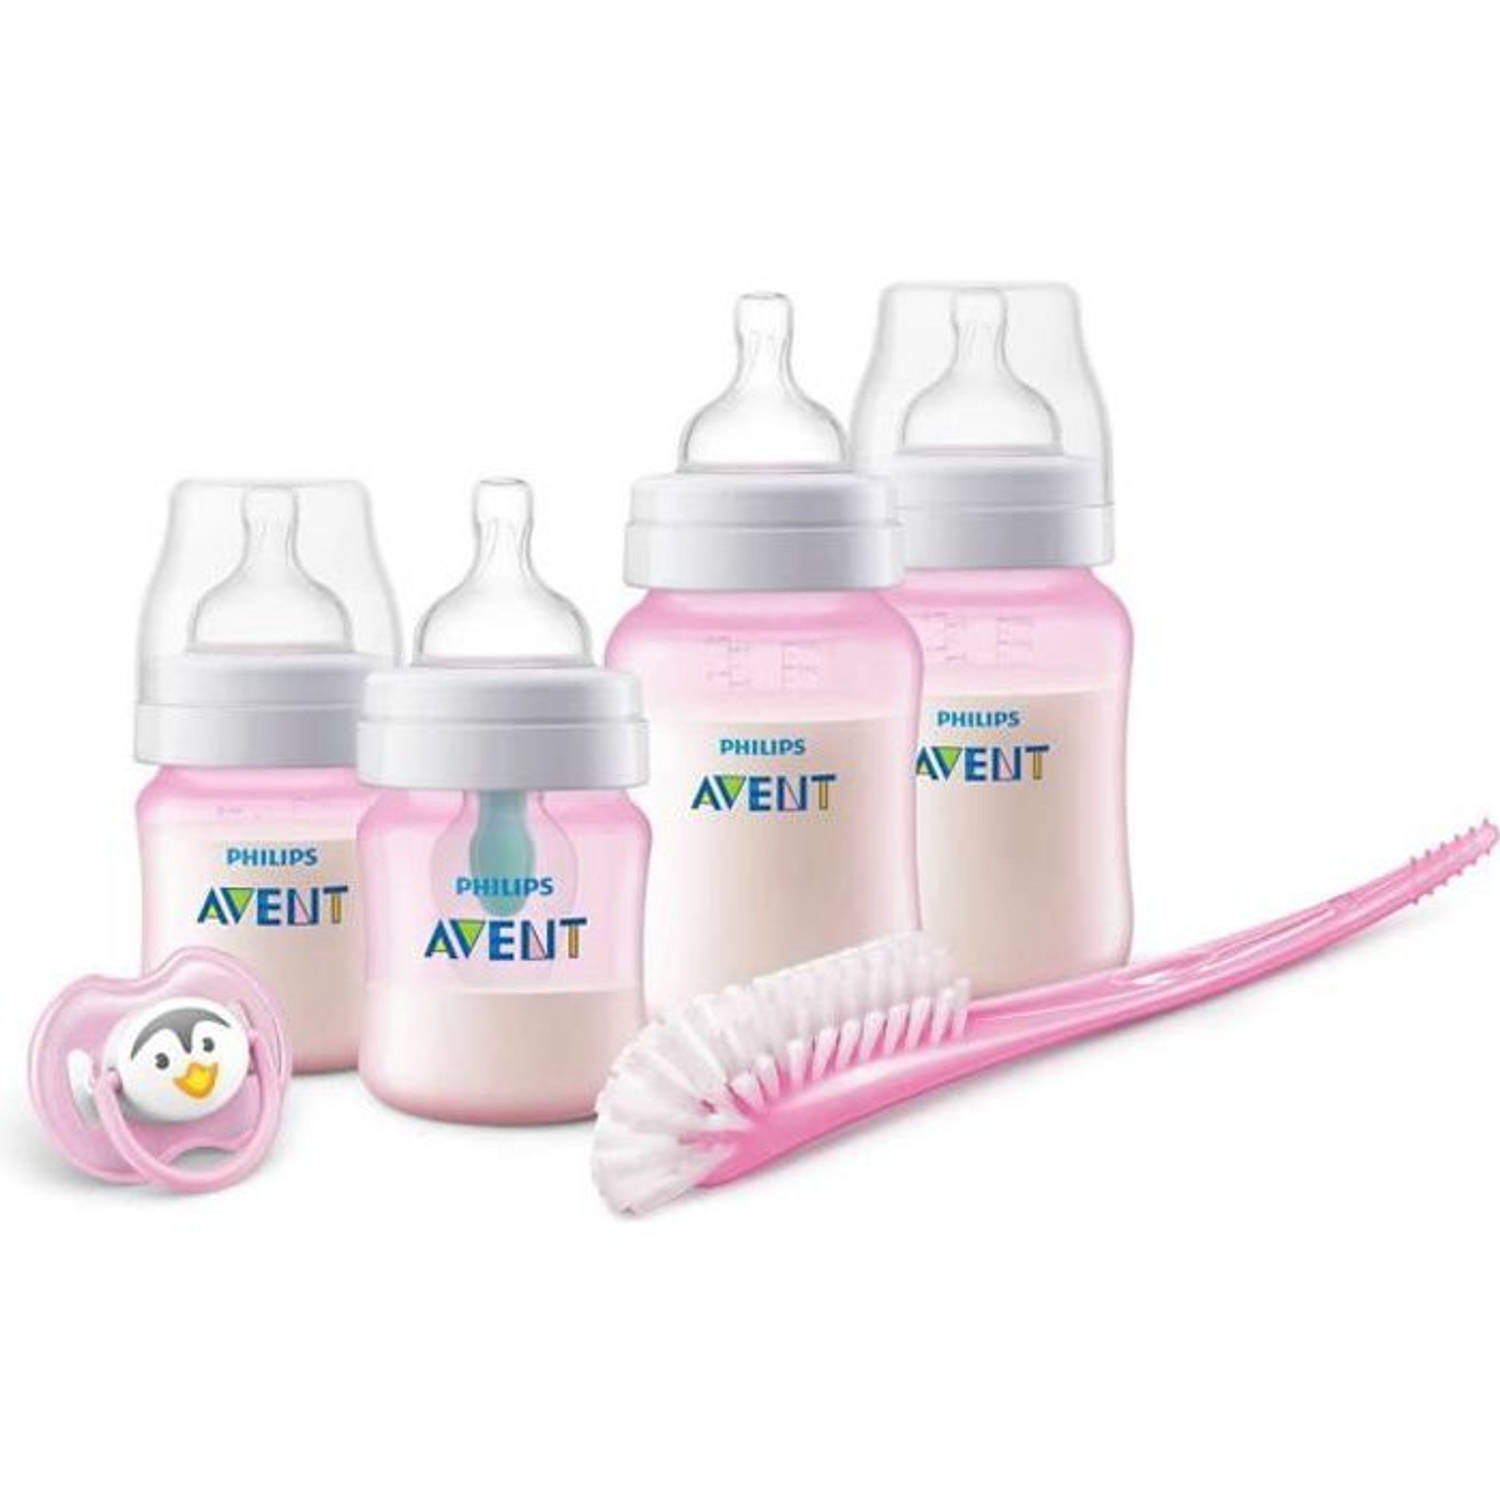 PHILIPS AVENT Kit voor pasgeboren flessen